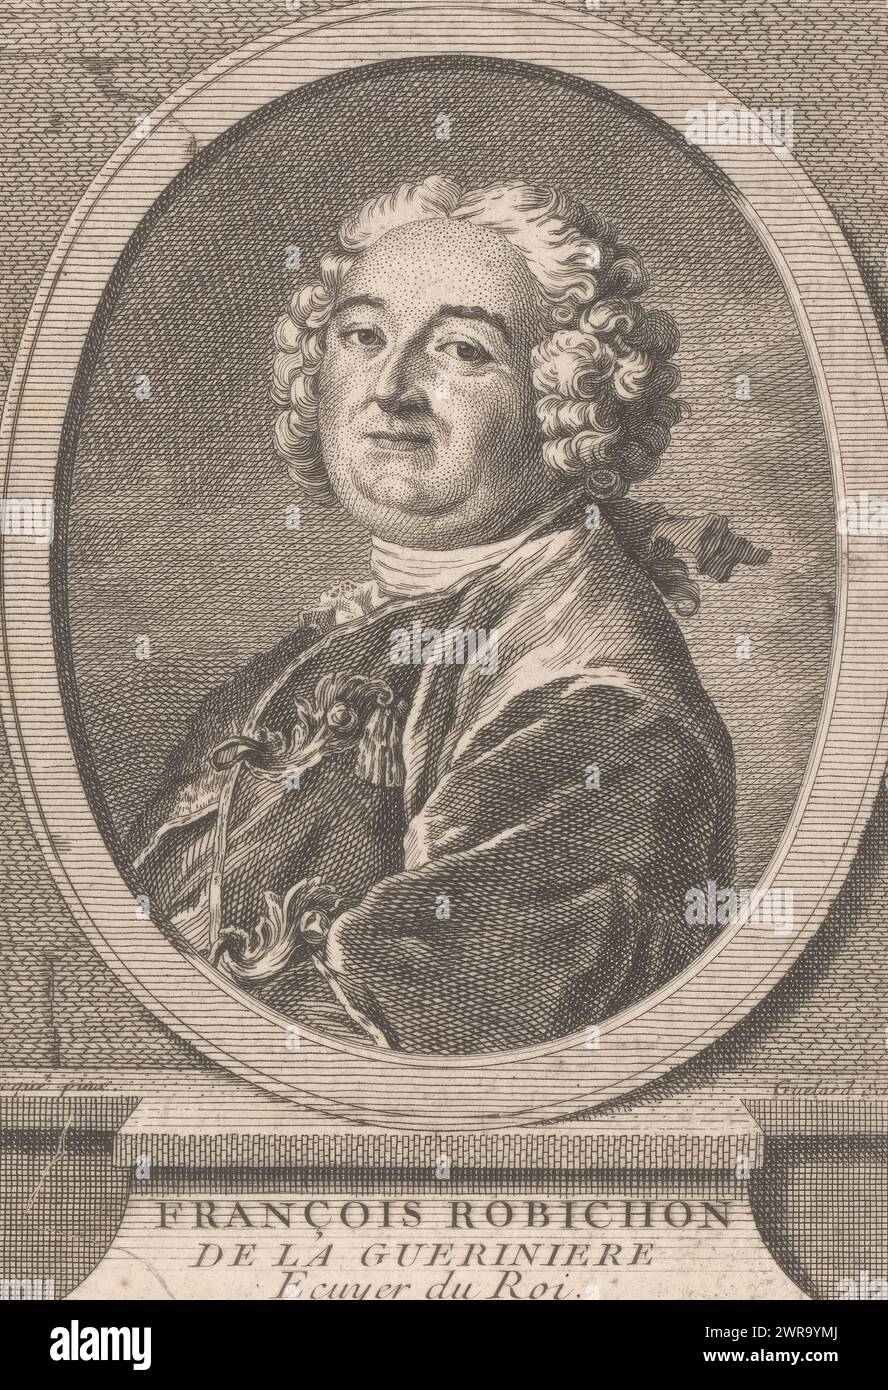 Portrait of François Robichon de la Guérinière, print maker: Jean Baptiste Guélard, after painting by: Louis Tocqué, Paris, 1733 - 1755, paper, etching, height 140 mm × width 98 mm, print Stock Photo